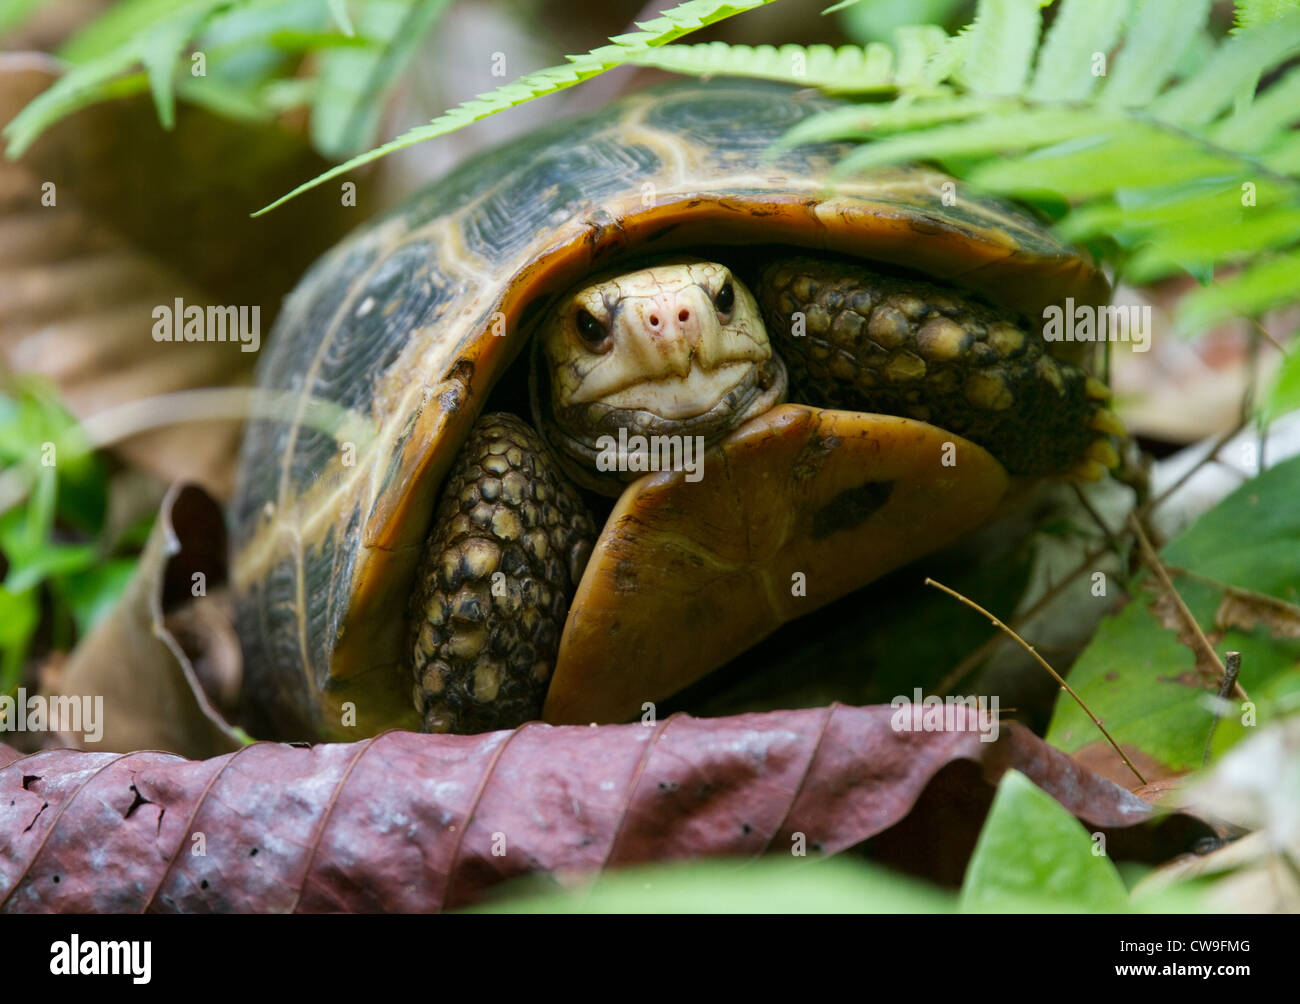 Alargadas o de cabeza amarilla Indotestudo elongata (tortuga) de la provincia de Krabi, en el sur de Tailandia. Especies en peligro de extinción. Foto de stock